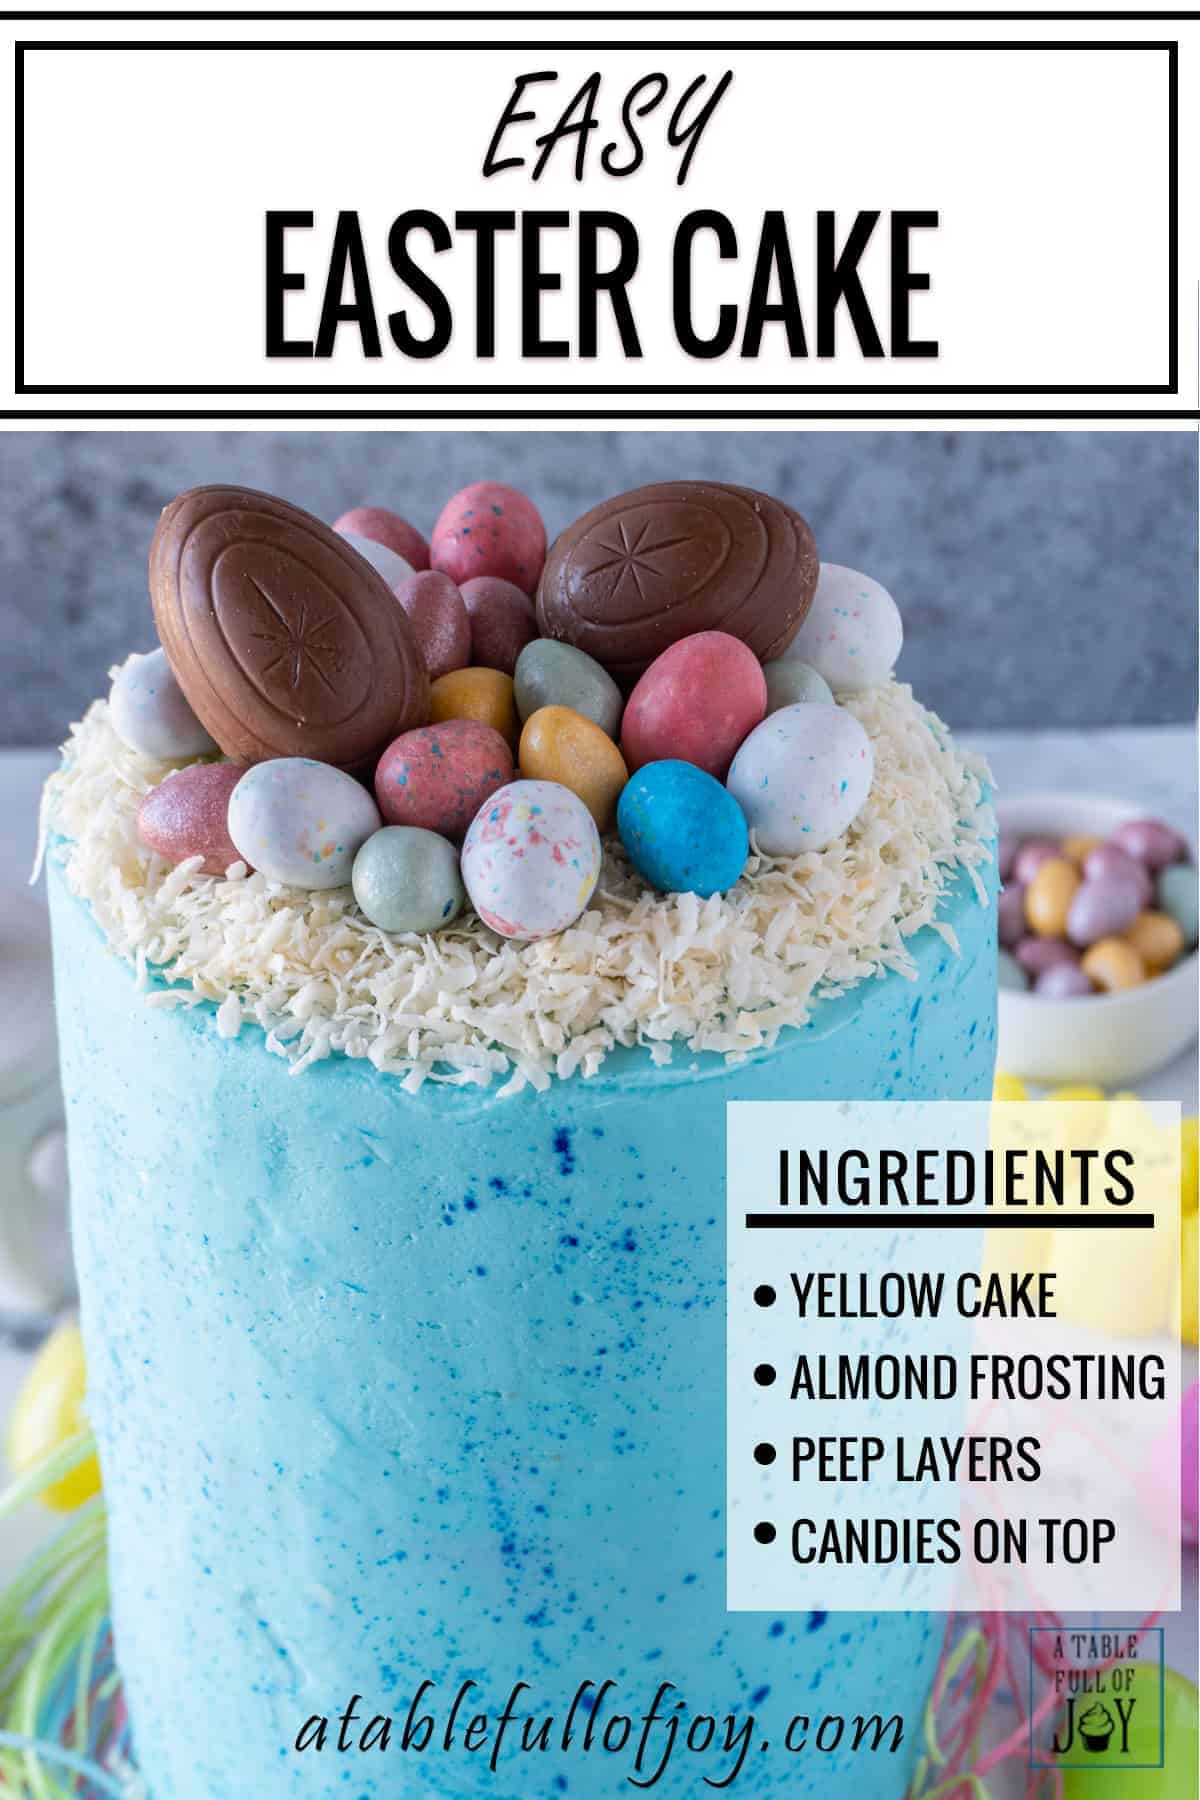 Easter Cake Pinterest Pins